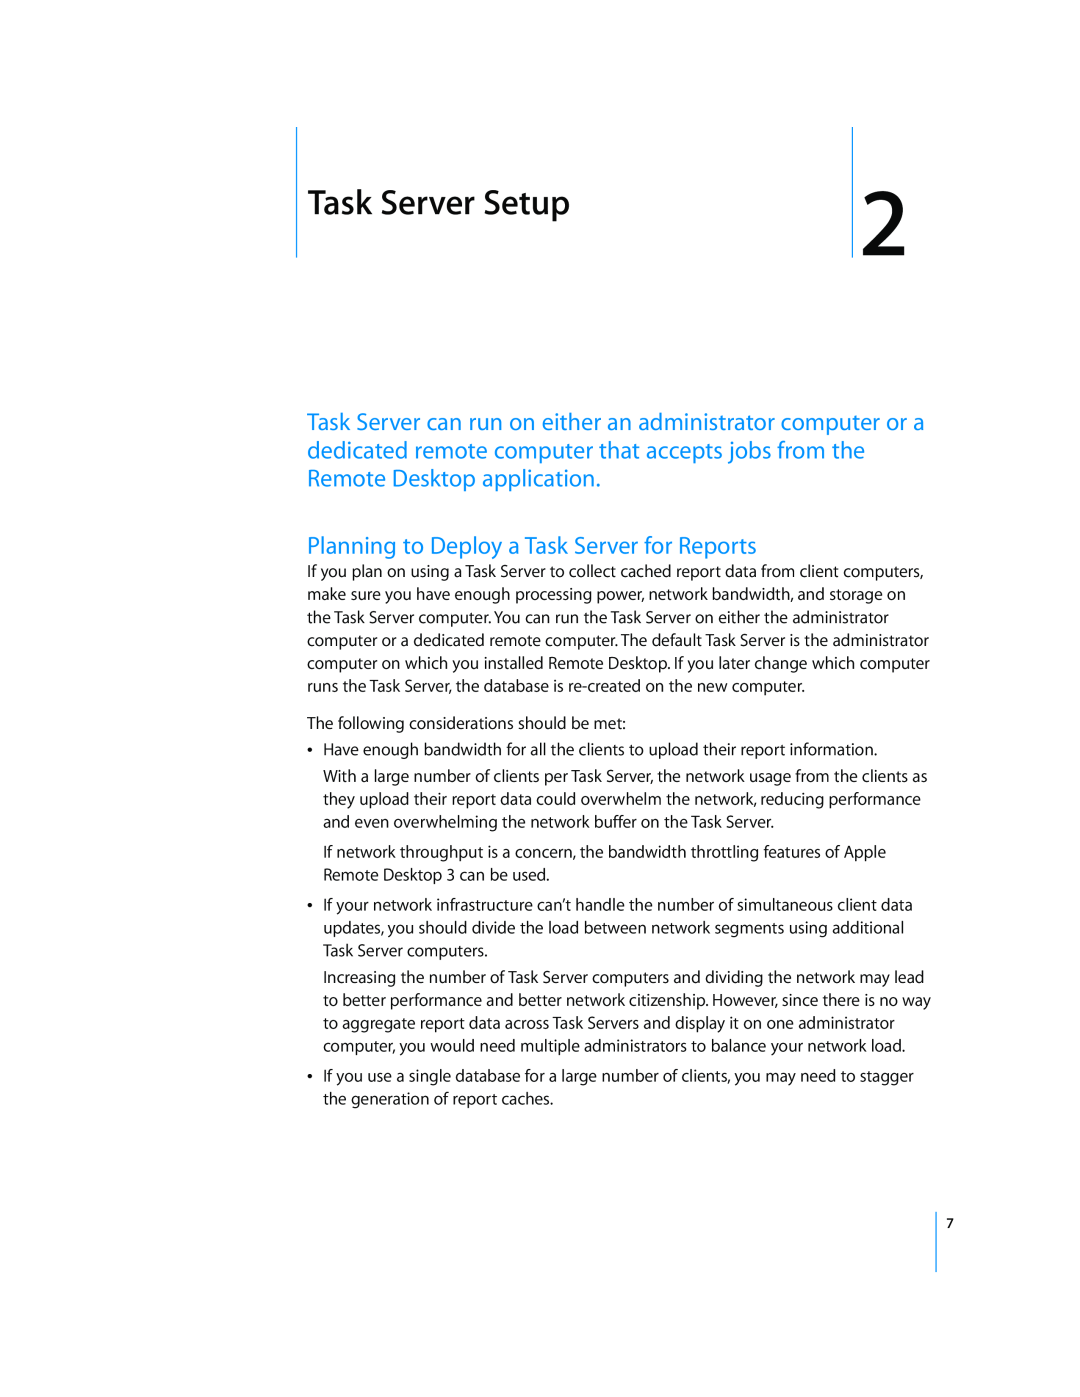 Apple 216 manual Task Server Setup, Planning to Deploy a Task Server for Reports 